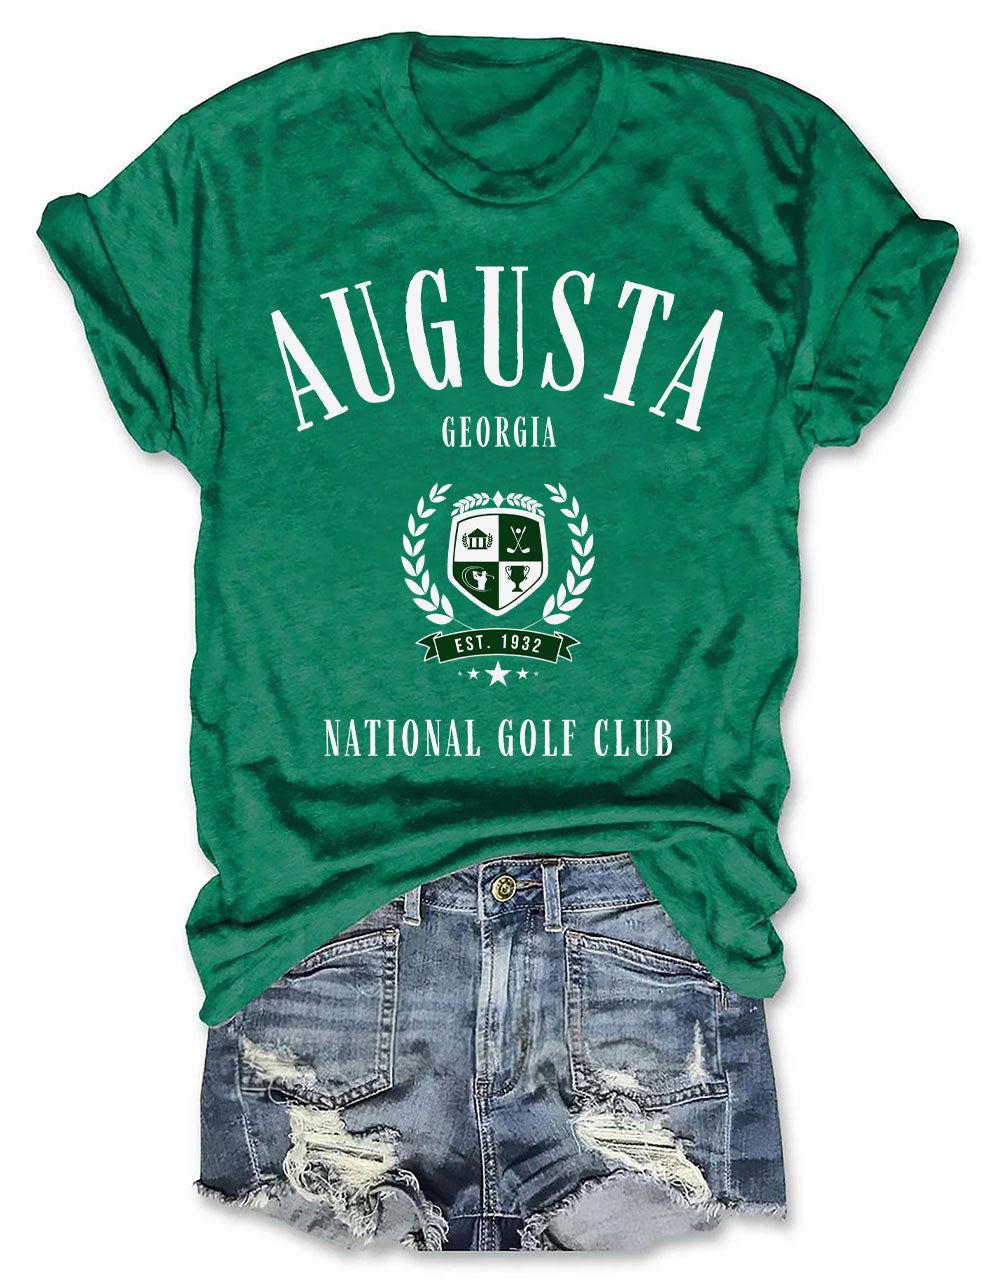 Augusta Georgia Golf Club T-shirt